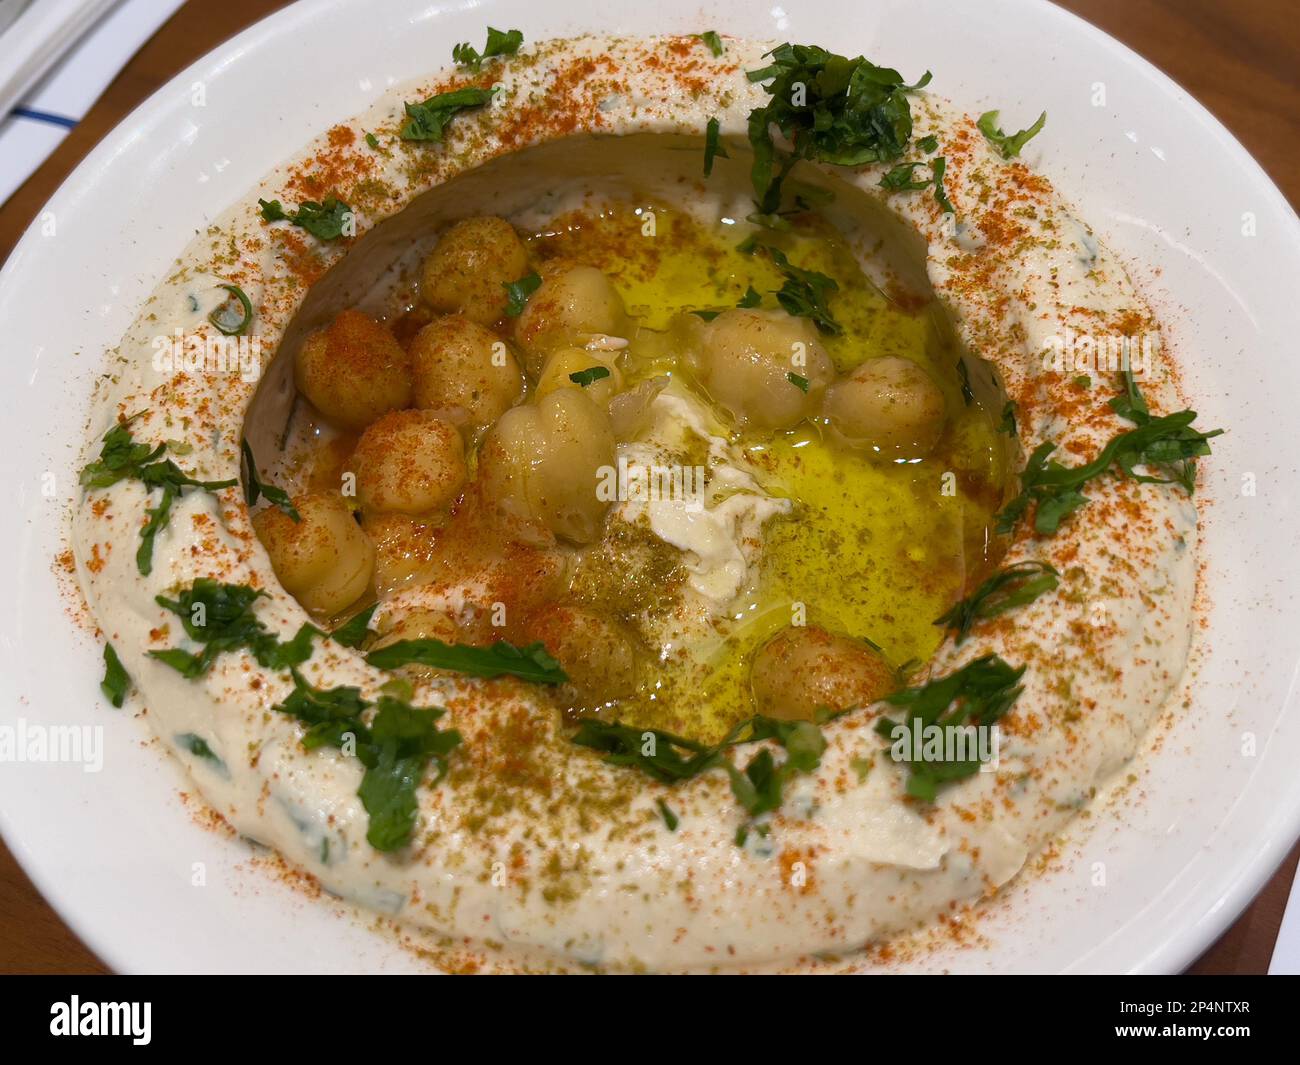 Nahaufnahme einer Schüssel Hummus auf einem Tisch. Arabische oder nahöstliche Küche. Stockfoto